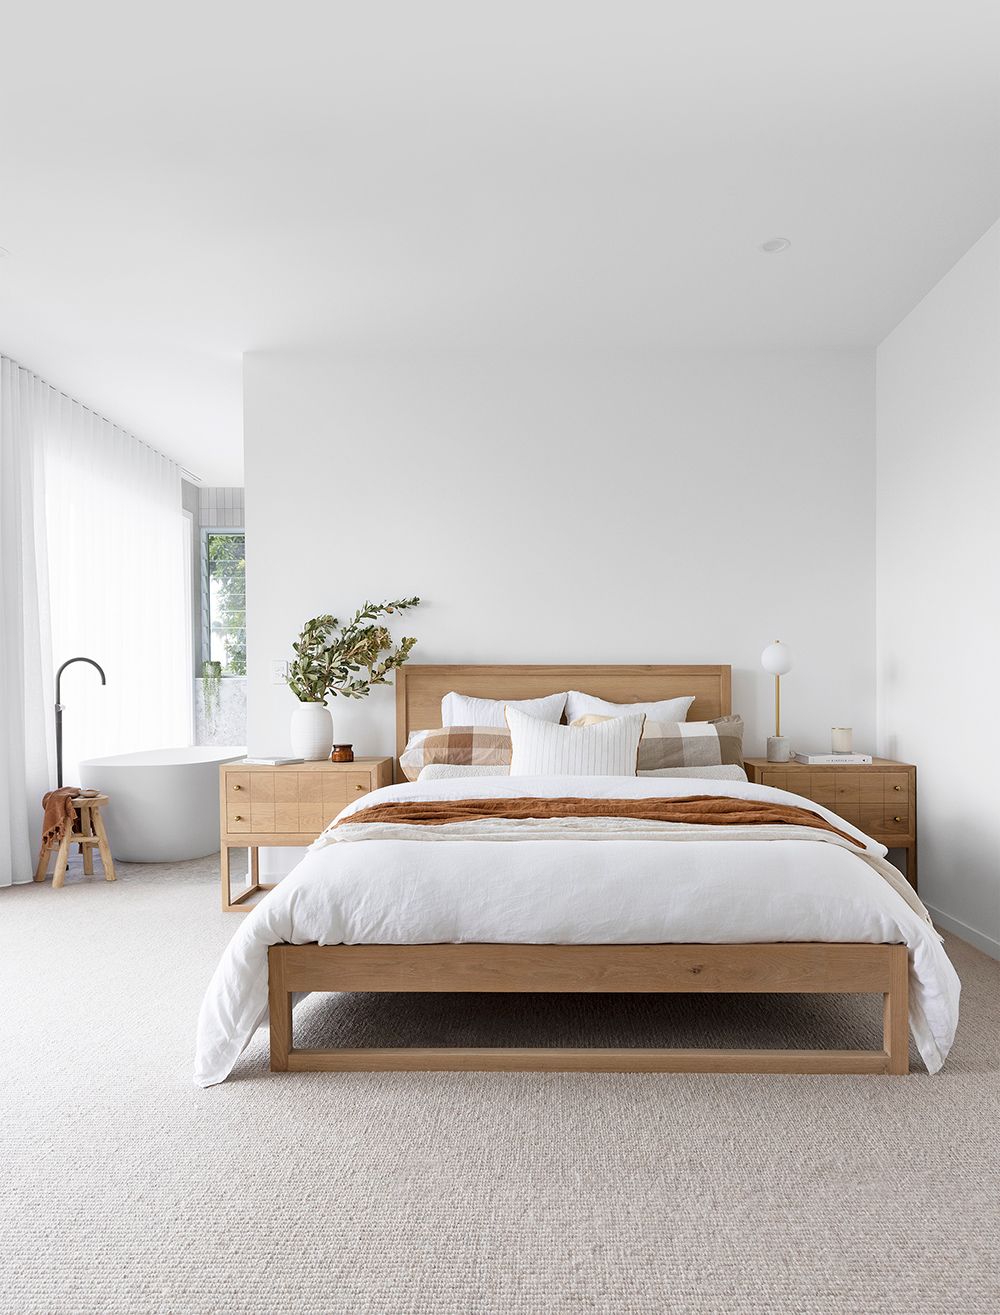 Oak Bed Bed Queen : The Best Oak Bed Queen for a Luxurious Bedroom Retreat